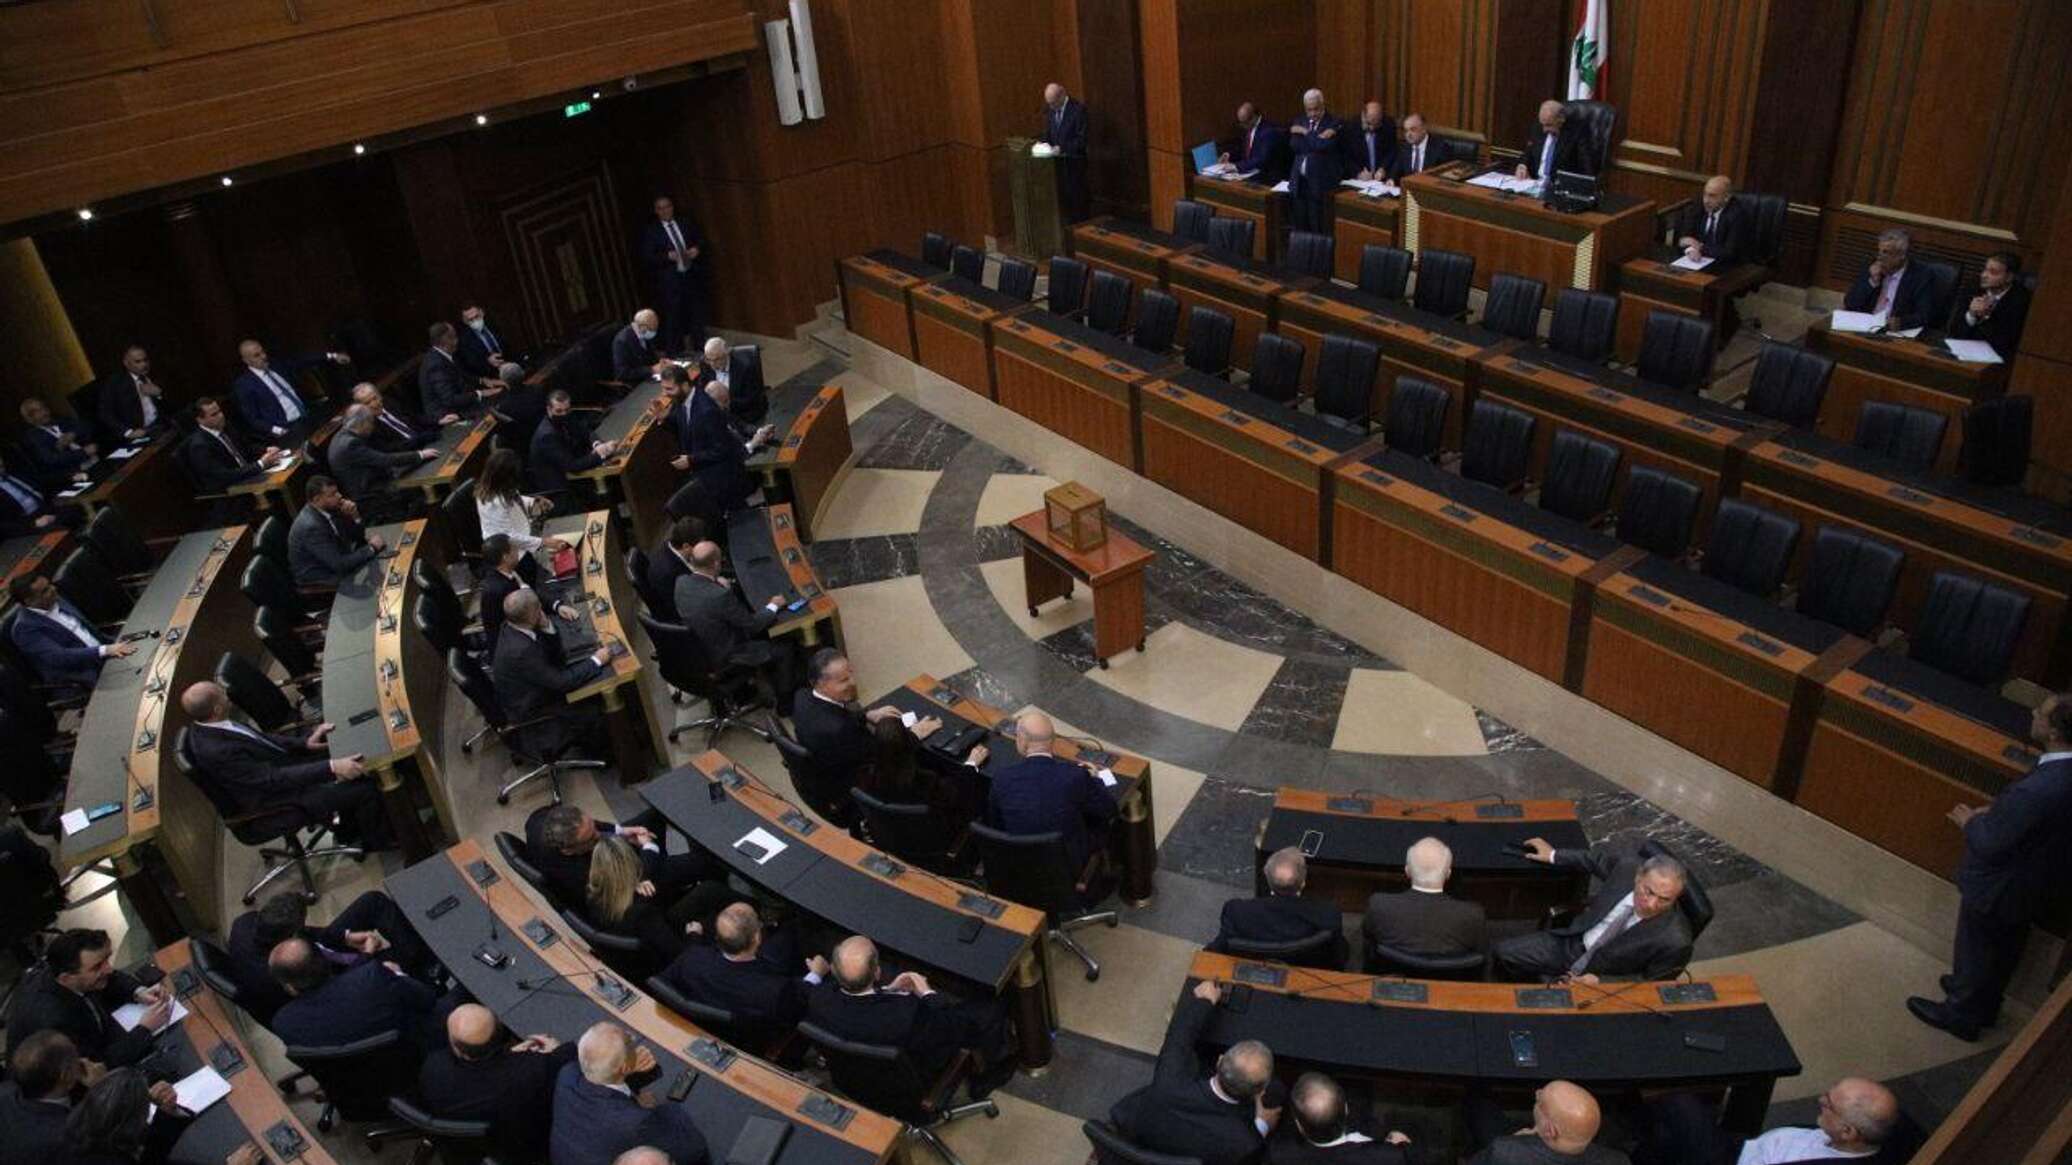 نائب لبناني: إعادة انتظام الحياة العامة تبدأ من انتخاب رئيس للجمهورية وتشكيل حكومة